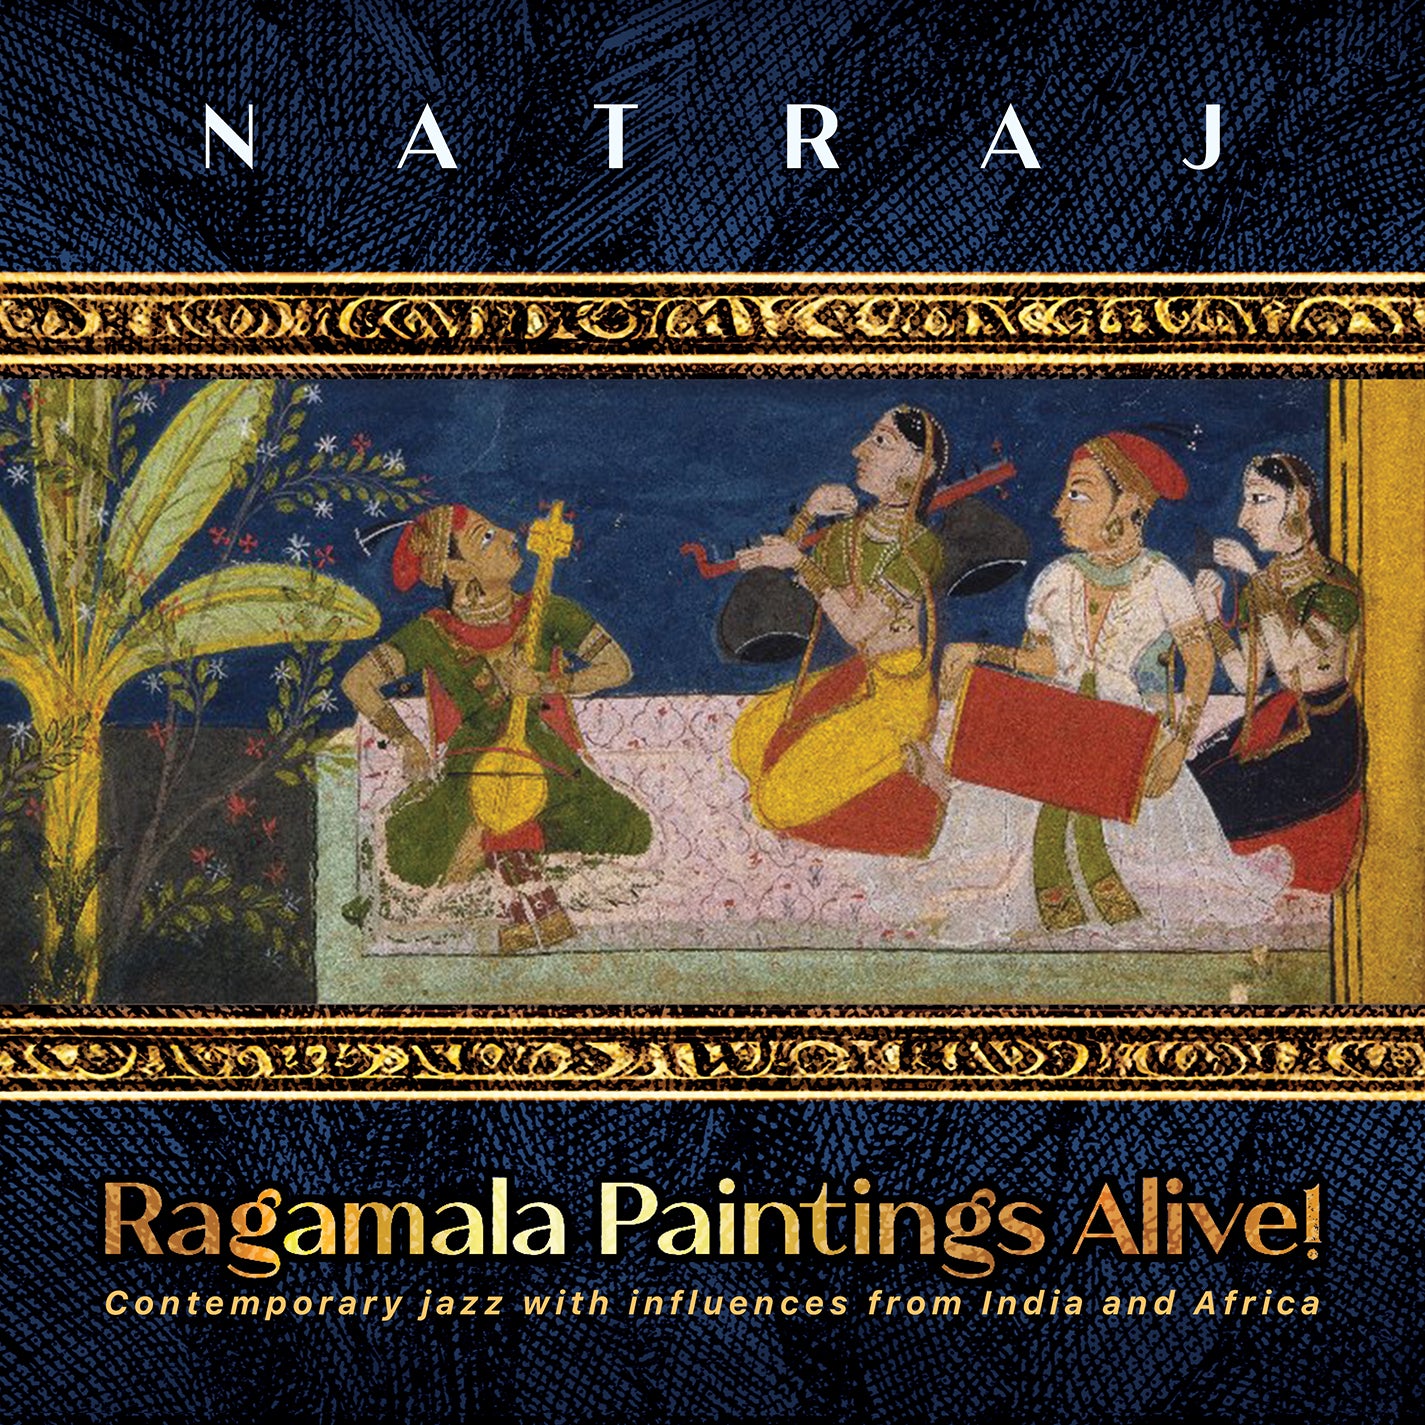 Govindarajan & Scarff: Ragamala Paintings Alive!